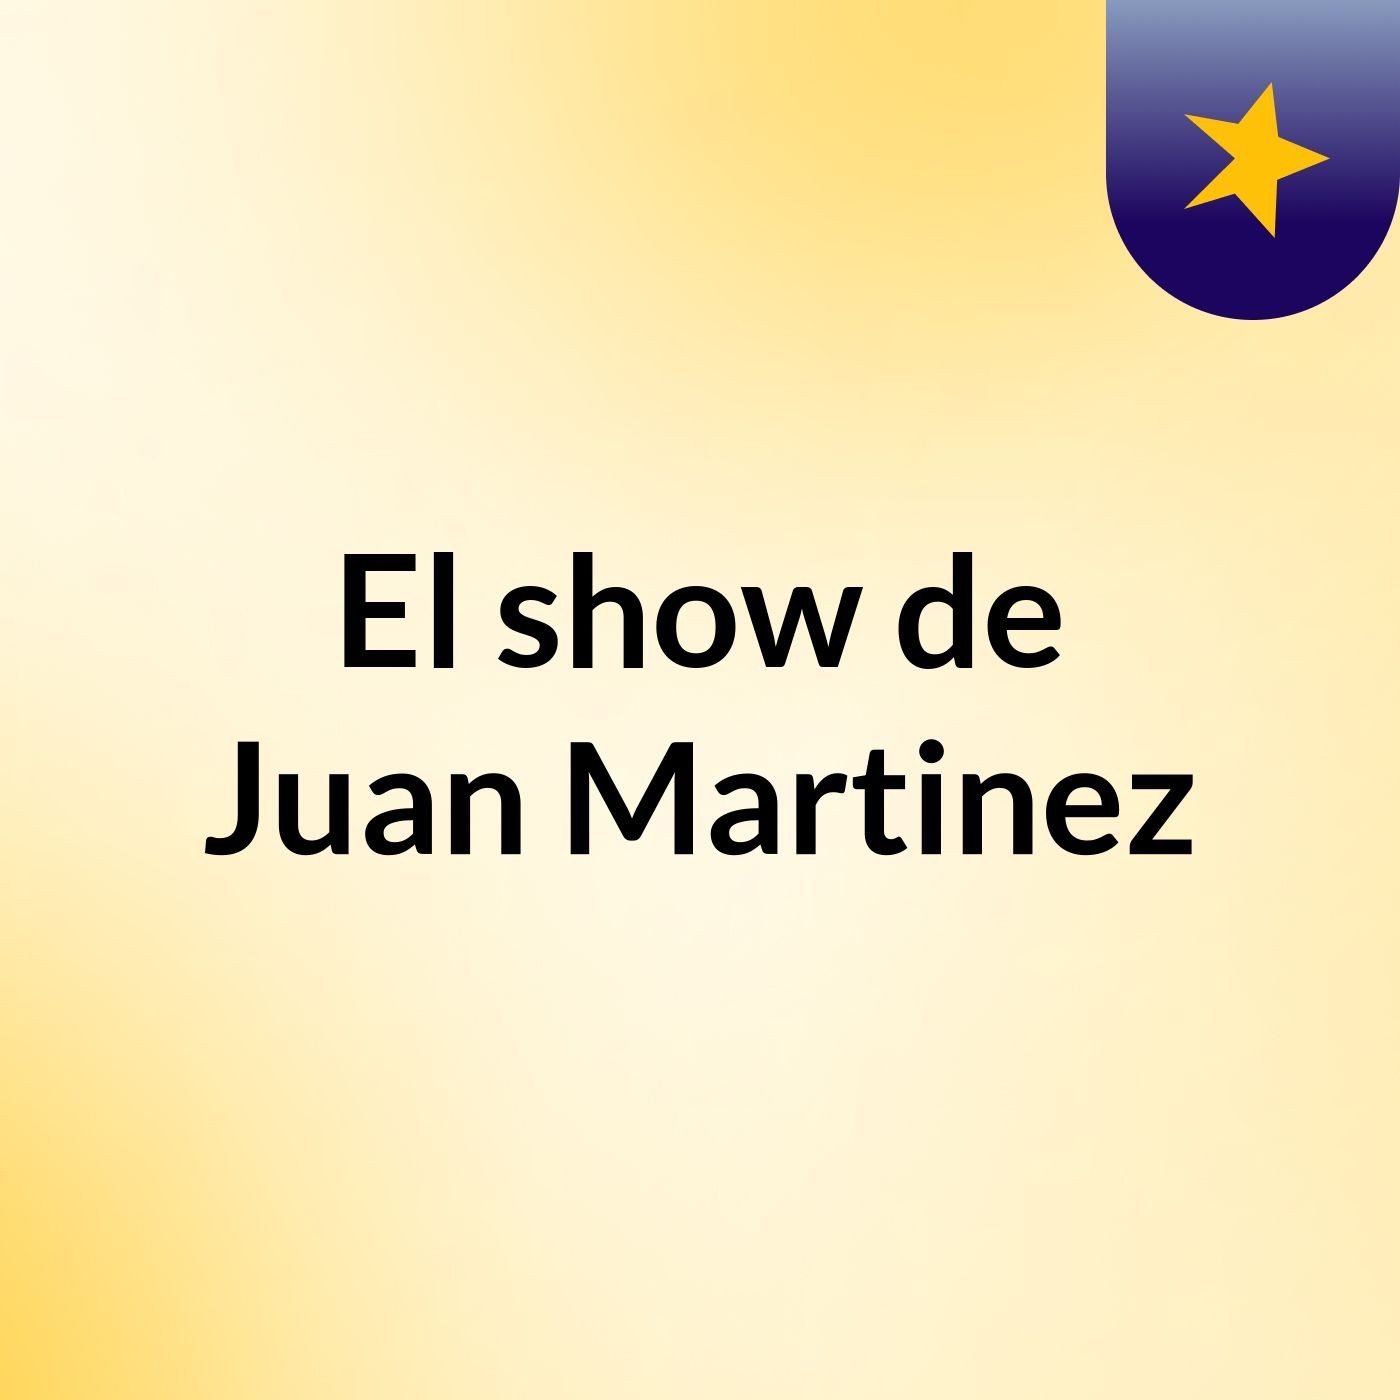 El show de Juan Martinez